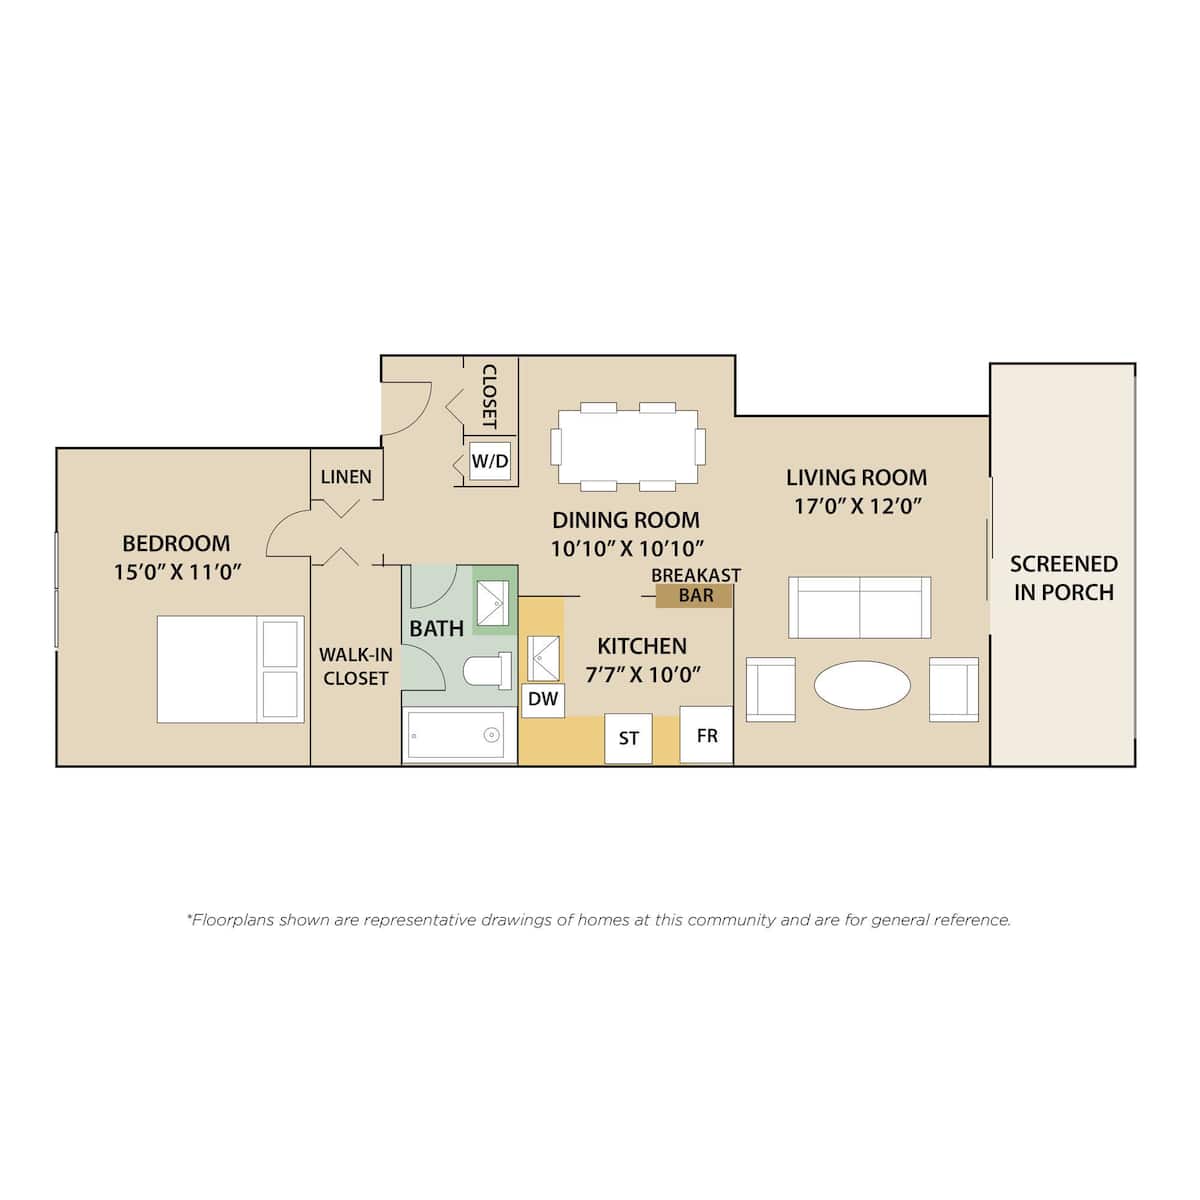 Floorplan diagram for Firenze, showing 1 bedroom